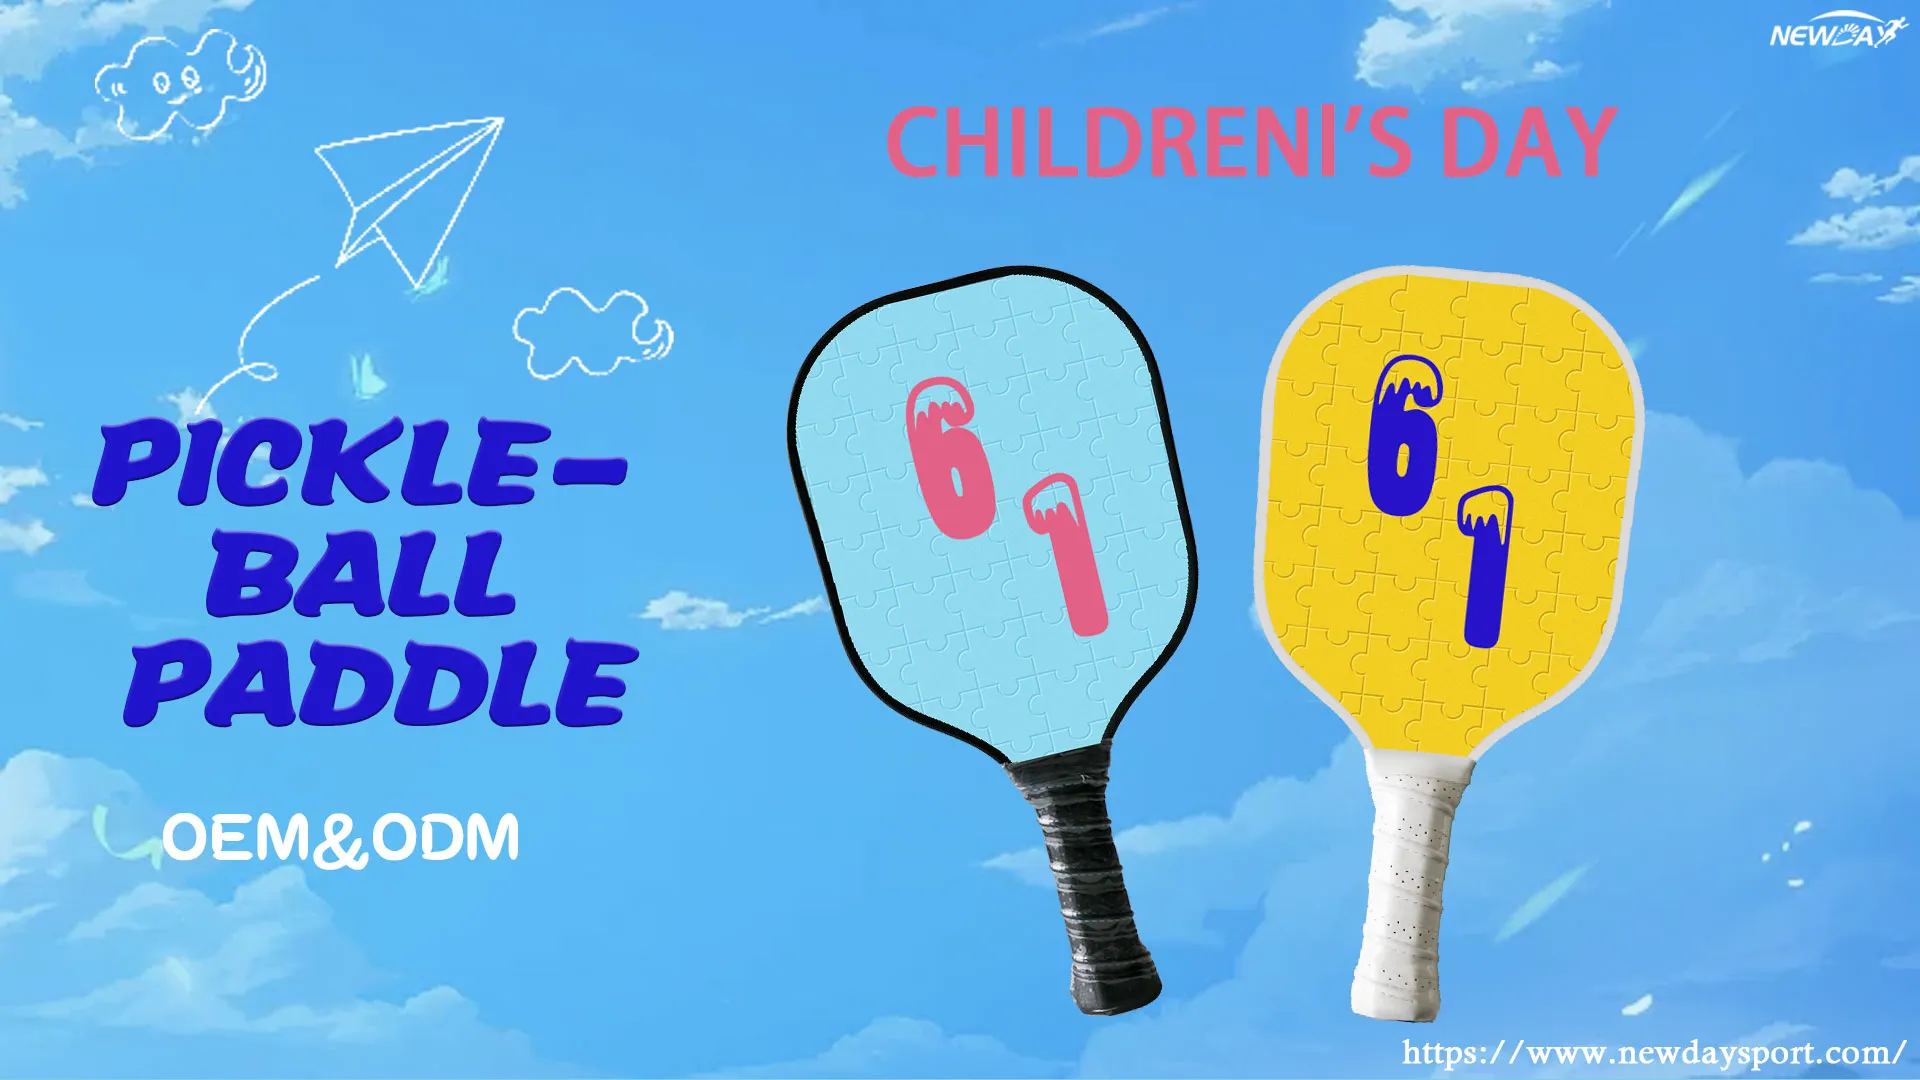 Il miglior regalo per i bambini: paddle per pickleball